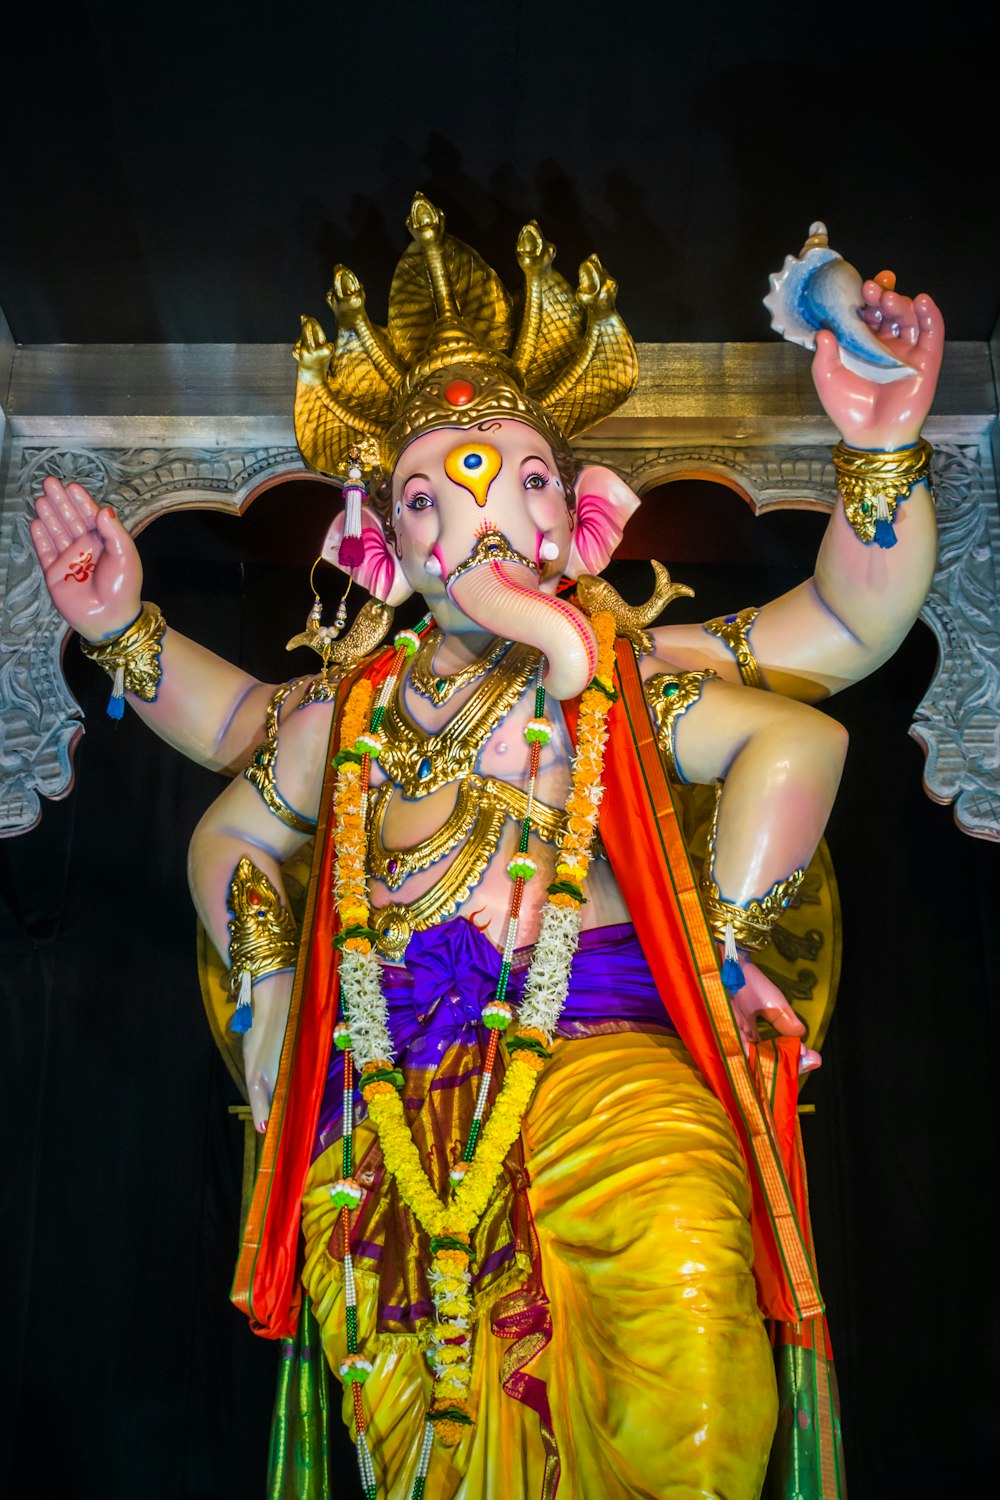 Une statue d’un dieu indien les mains en l’air